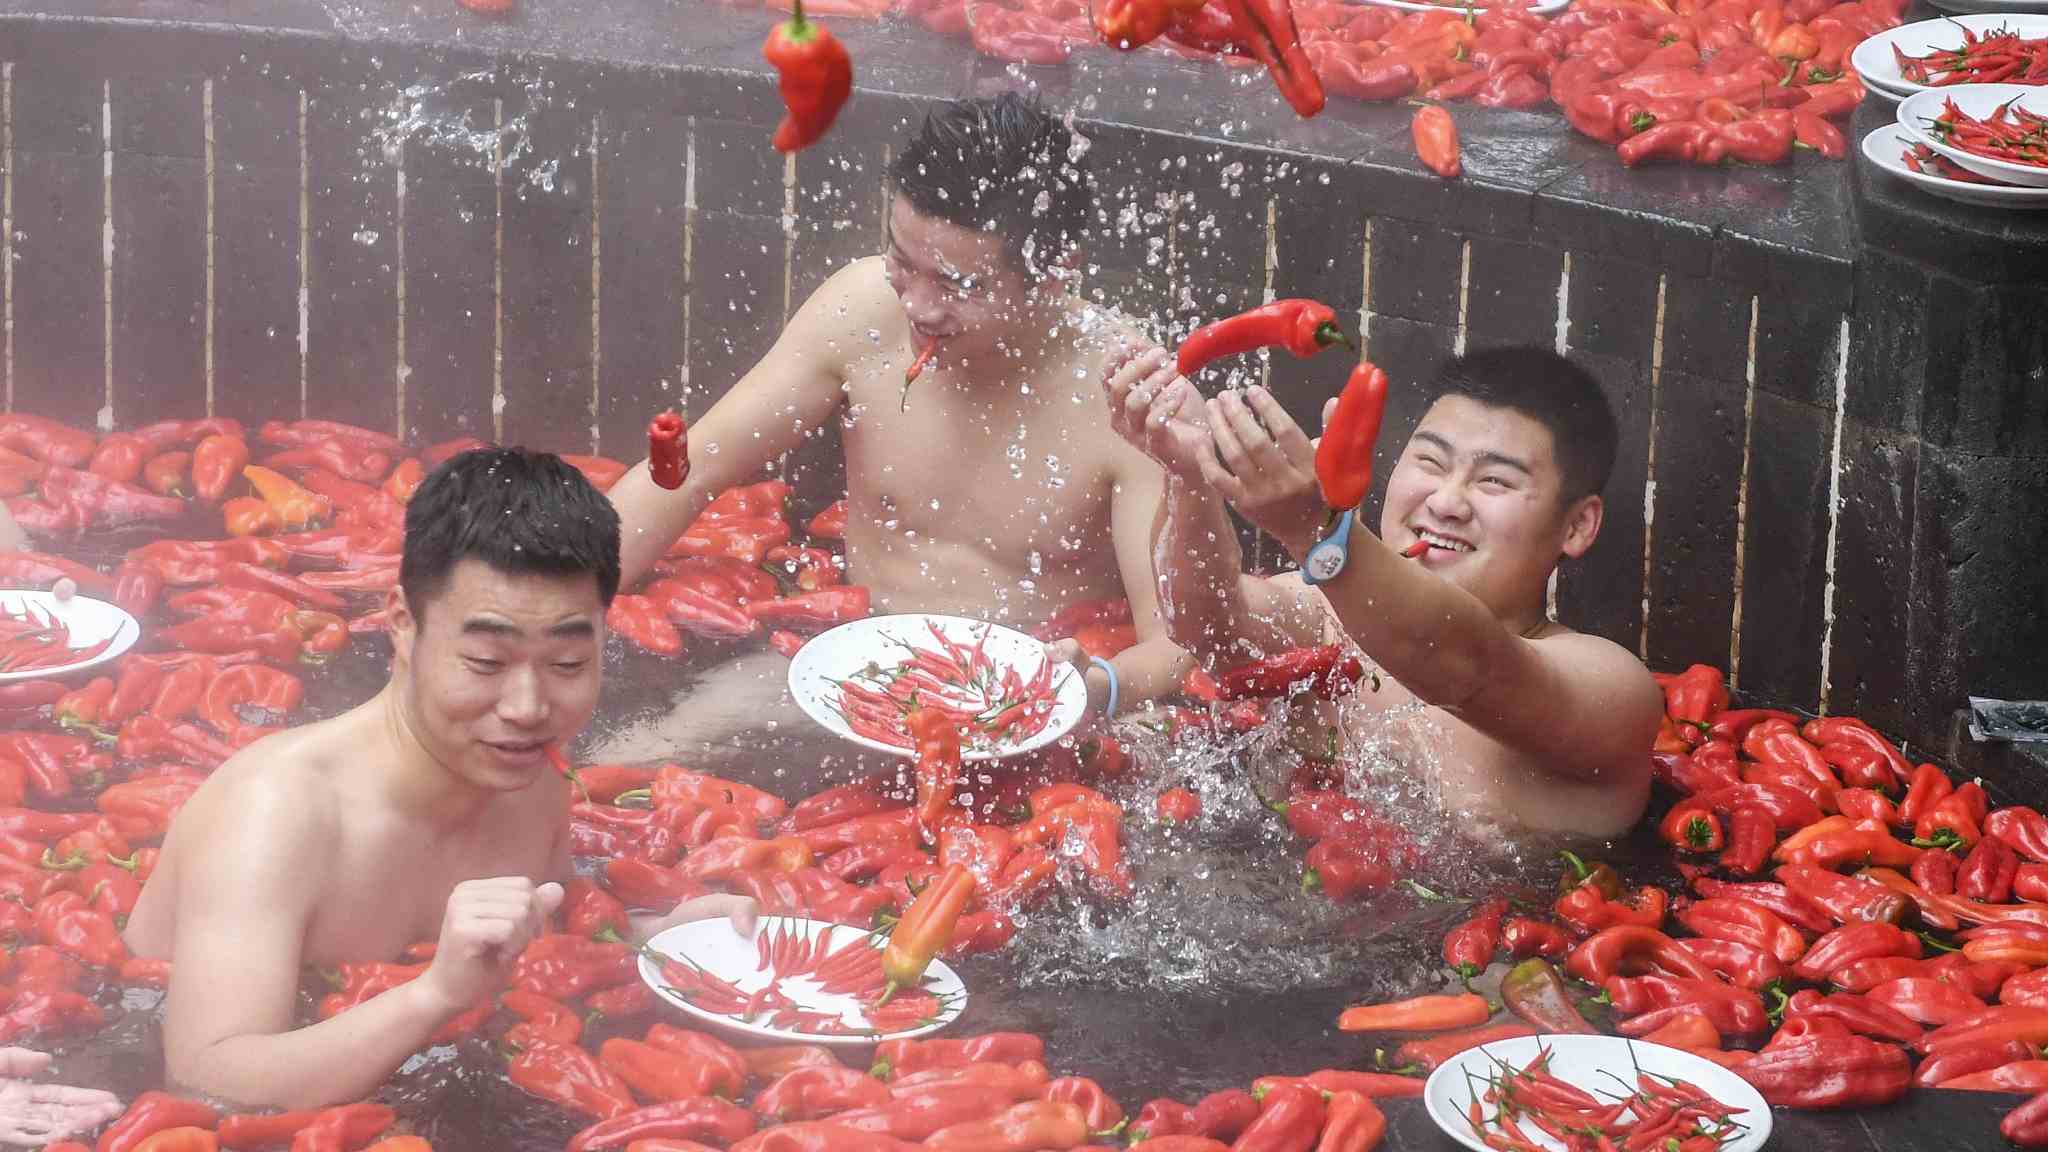 Конкурс по поеданию перца Чили в Китае